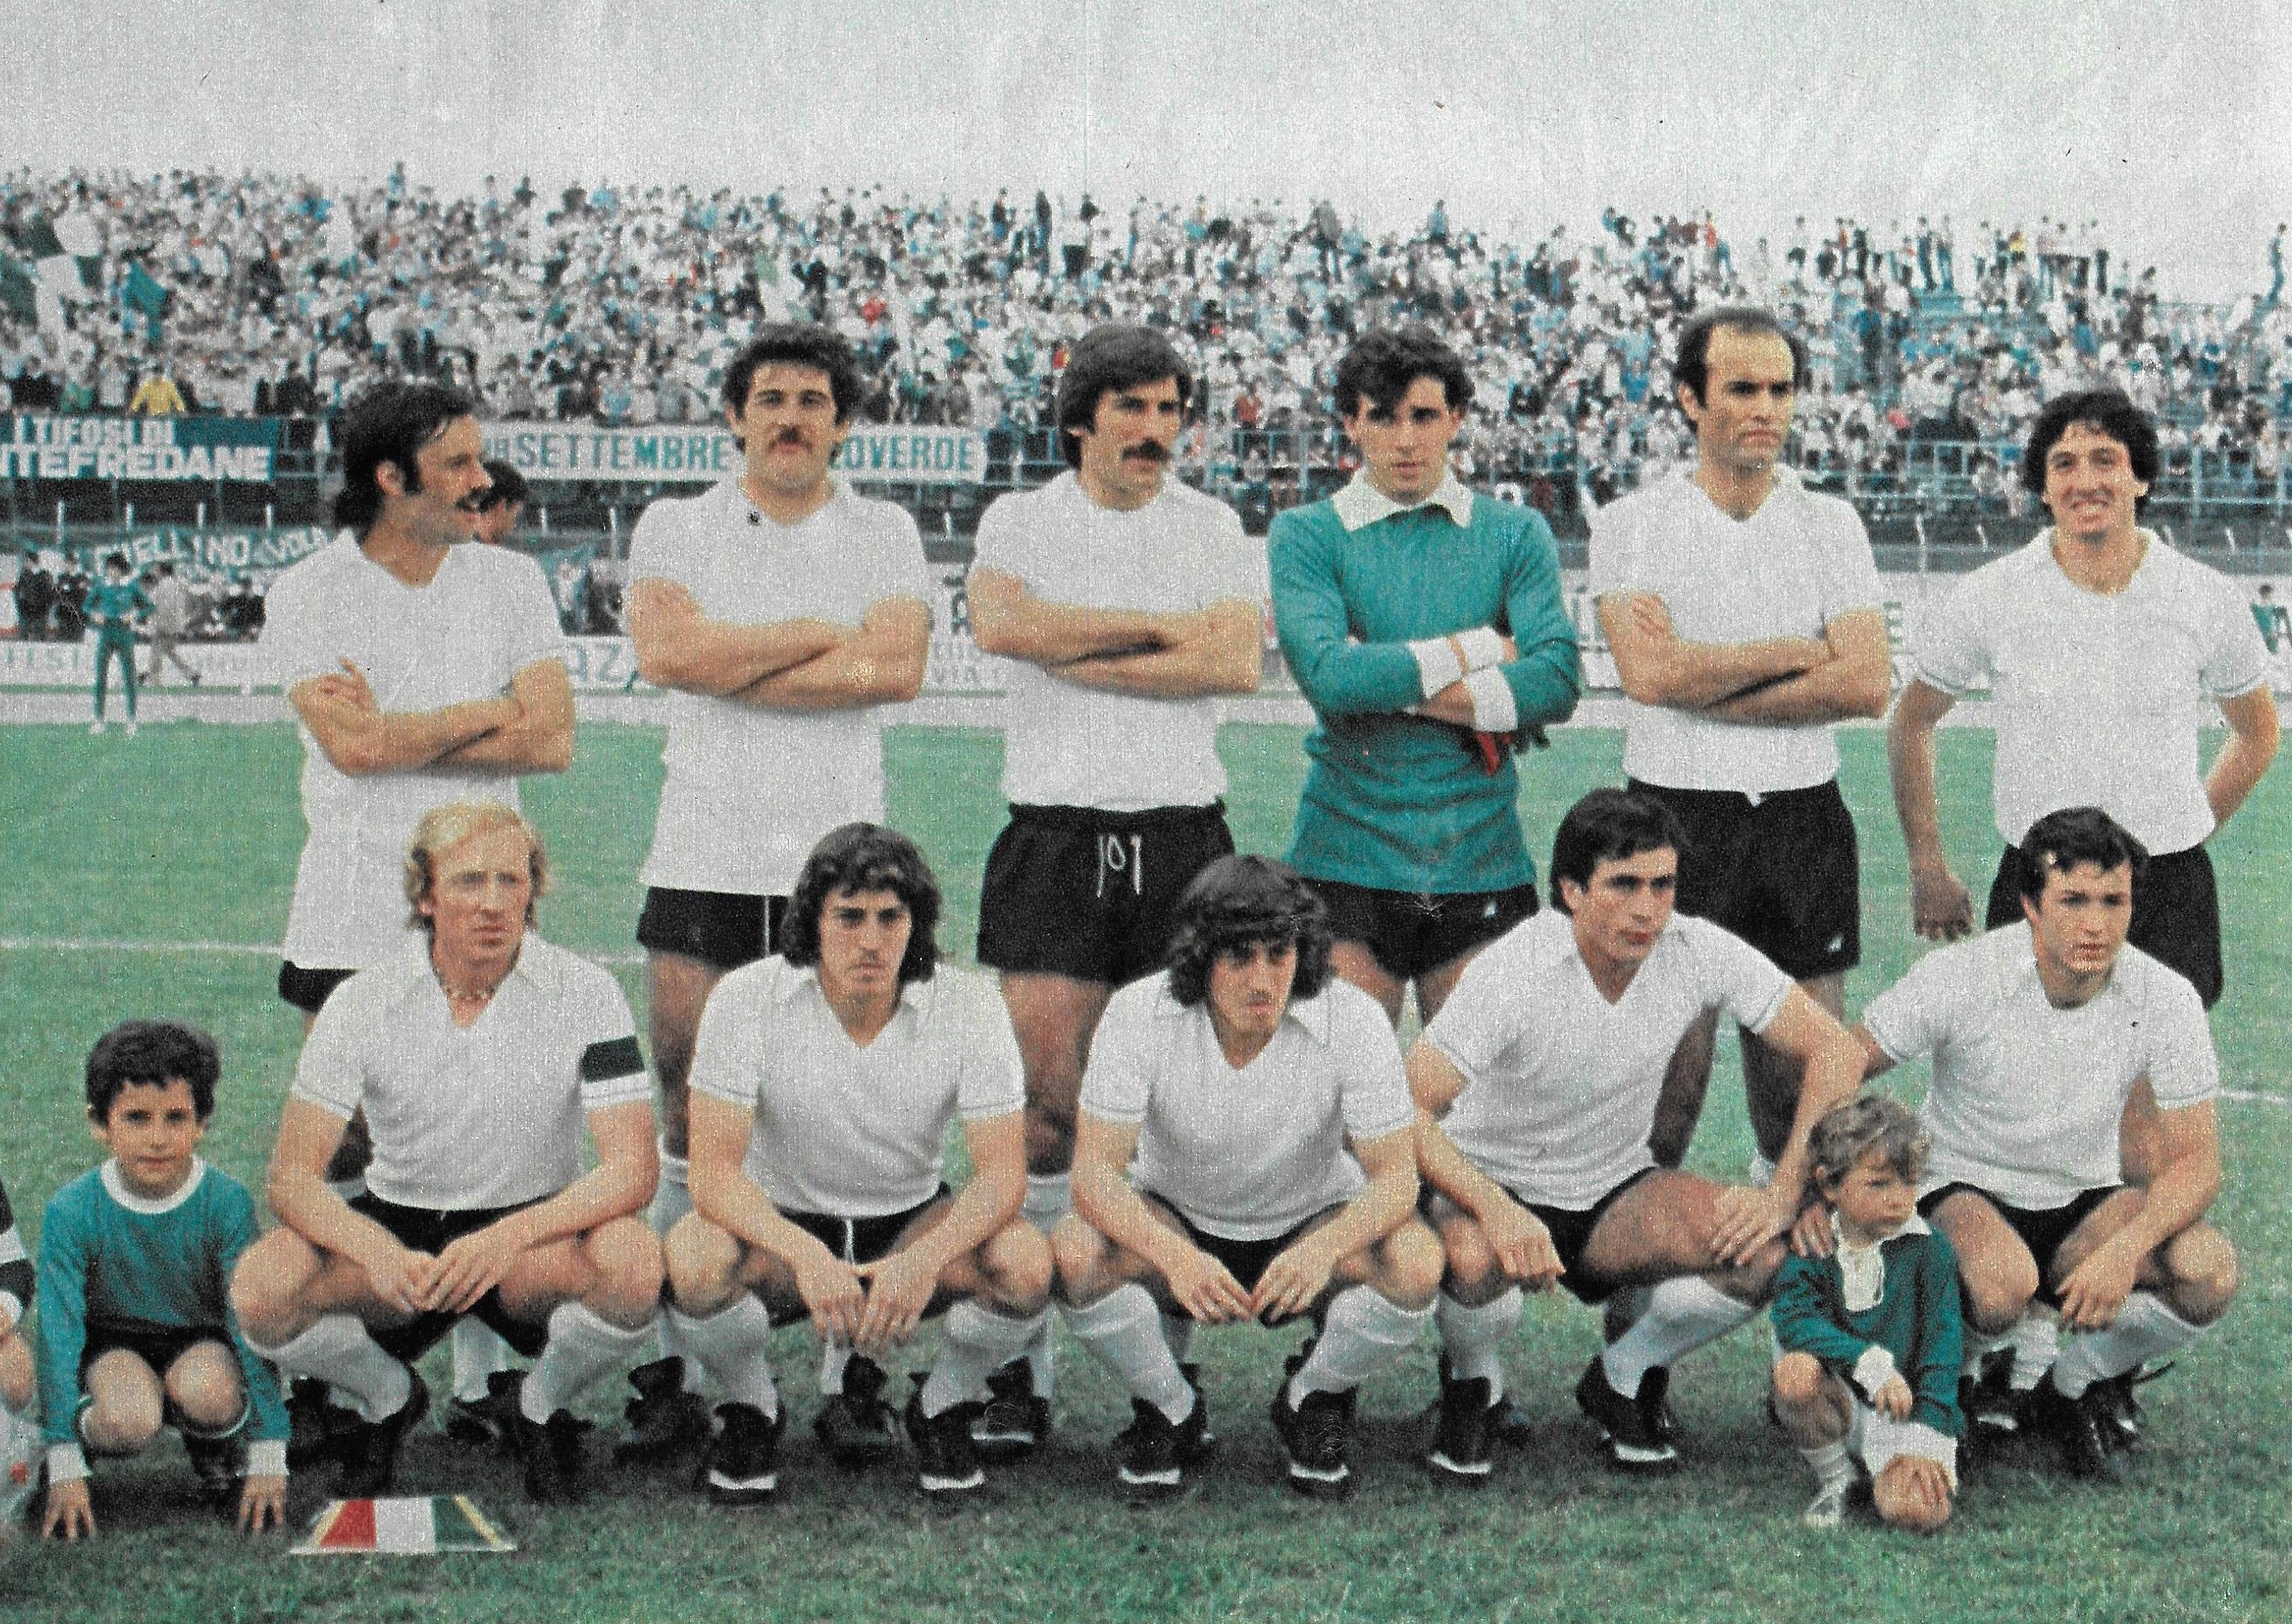 Unione Sportiva Avellino 1977-1978 - Wikipedia